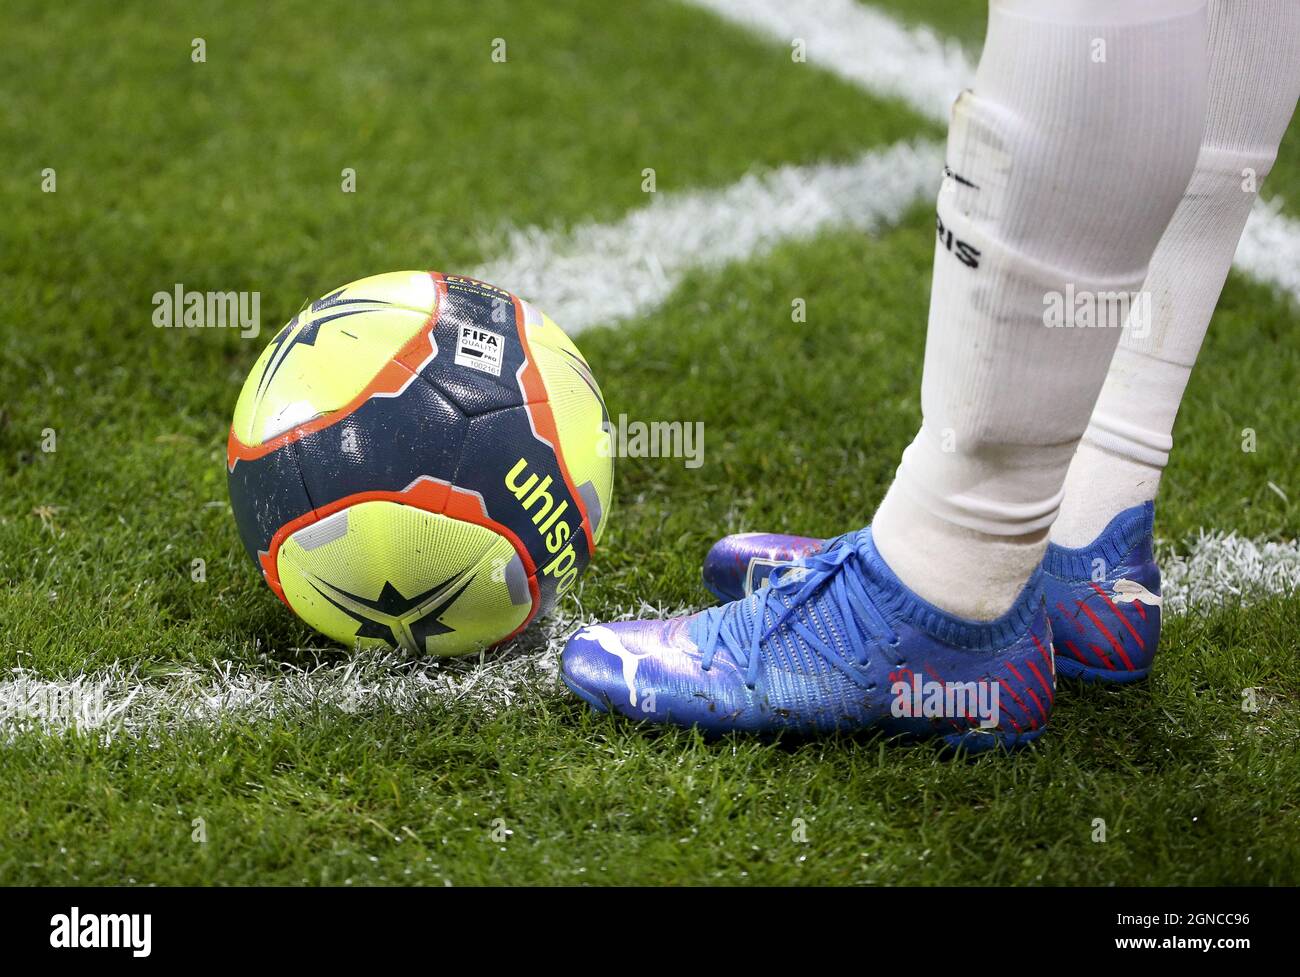 Puma botas de Neymar Jr de PSG, uhlsport durante el campeonato francés de Ligue 1 partido de fútbol entre el FC Metz y Paris Saint-Germain (PSG) el 22 de septiembre de